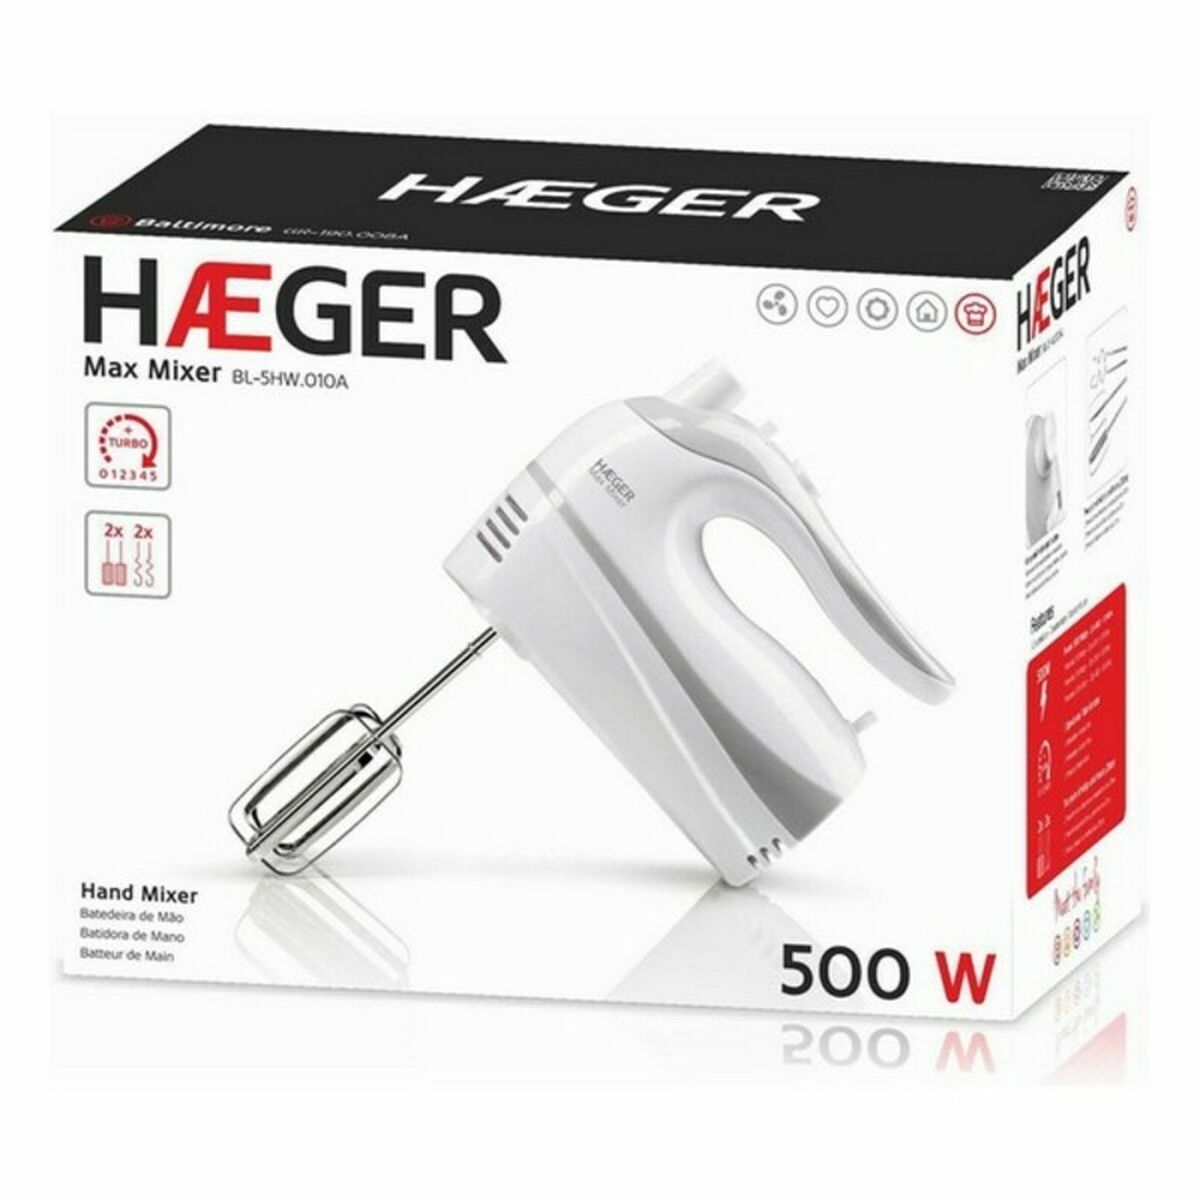 Mixer Haeger BL-5HW.011A 500 W - CA International  